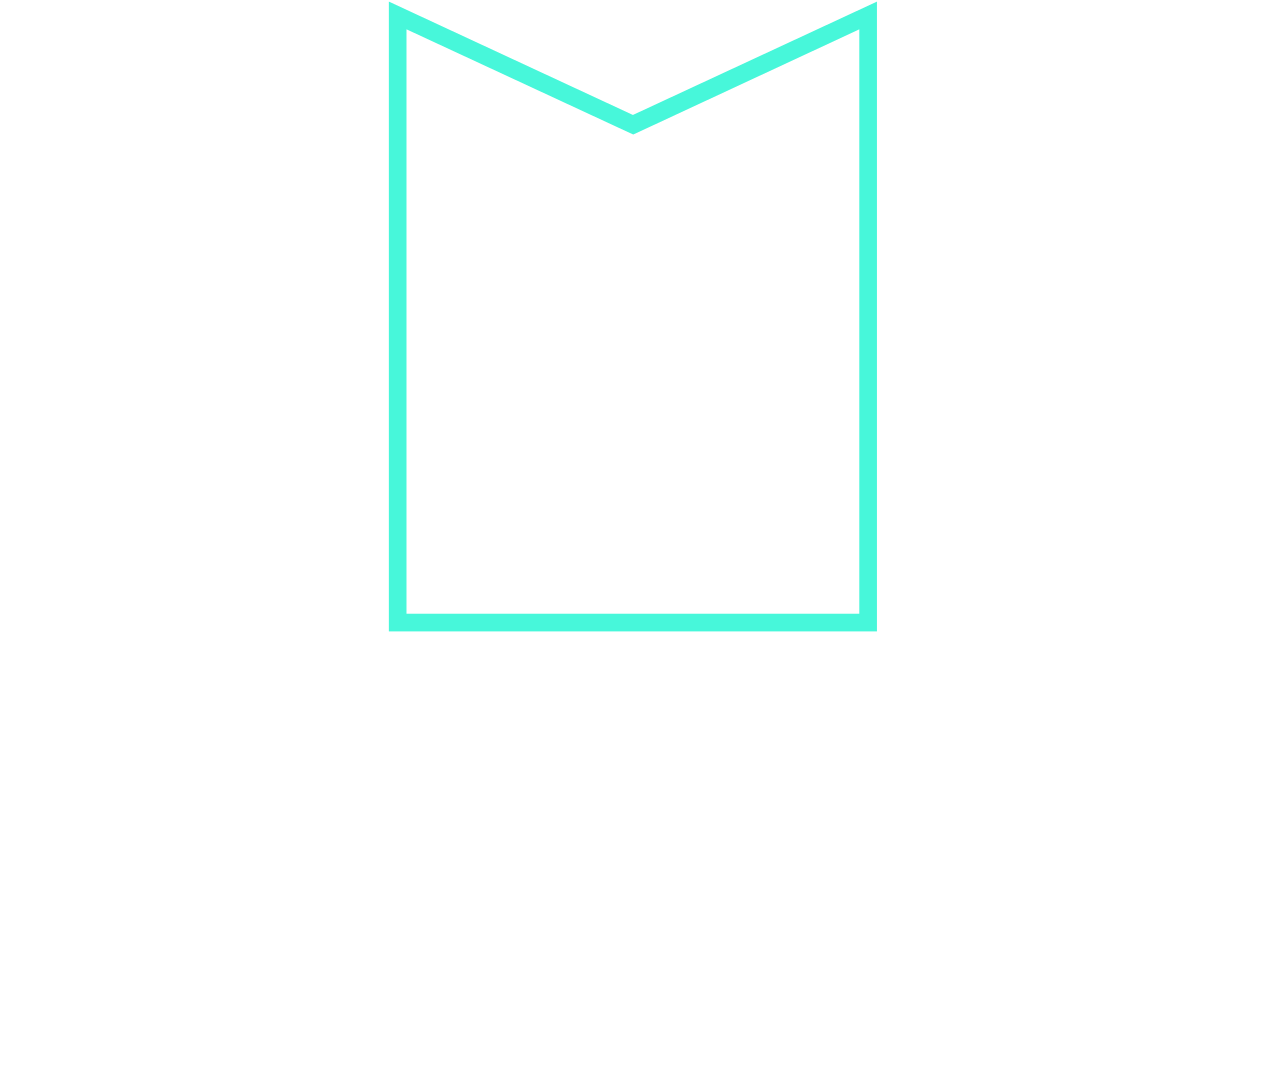 MELHOR's web page